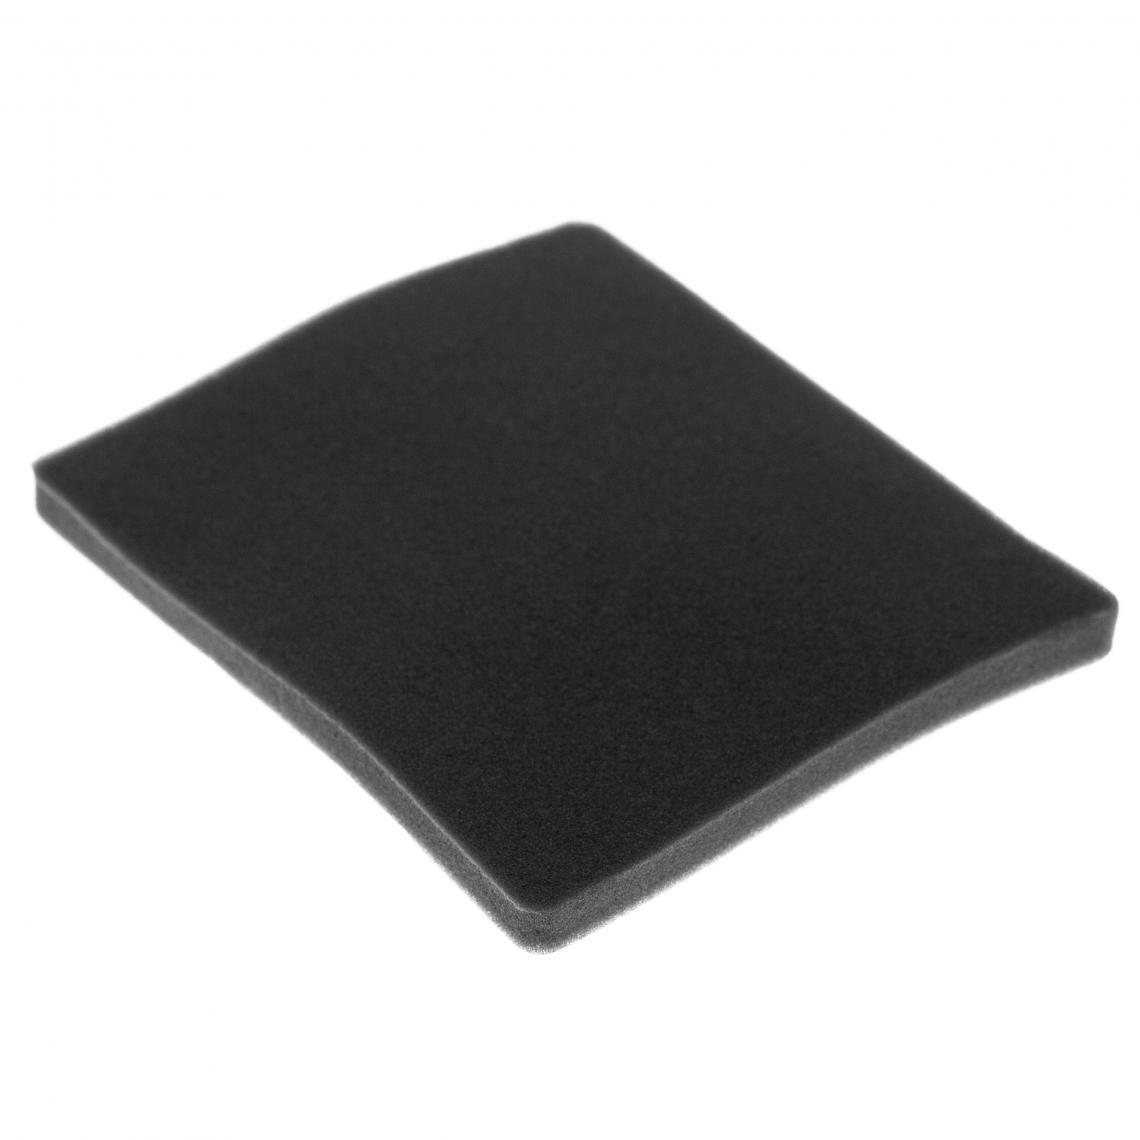 Vhbw - vhbw Filtre compatible avec Electrolux ZCX6202 (910286610) aspirateur - filtre de sortie d'air (filtre éponge), noir - Accessoire entretien des sols